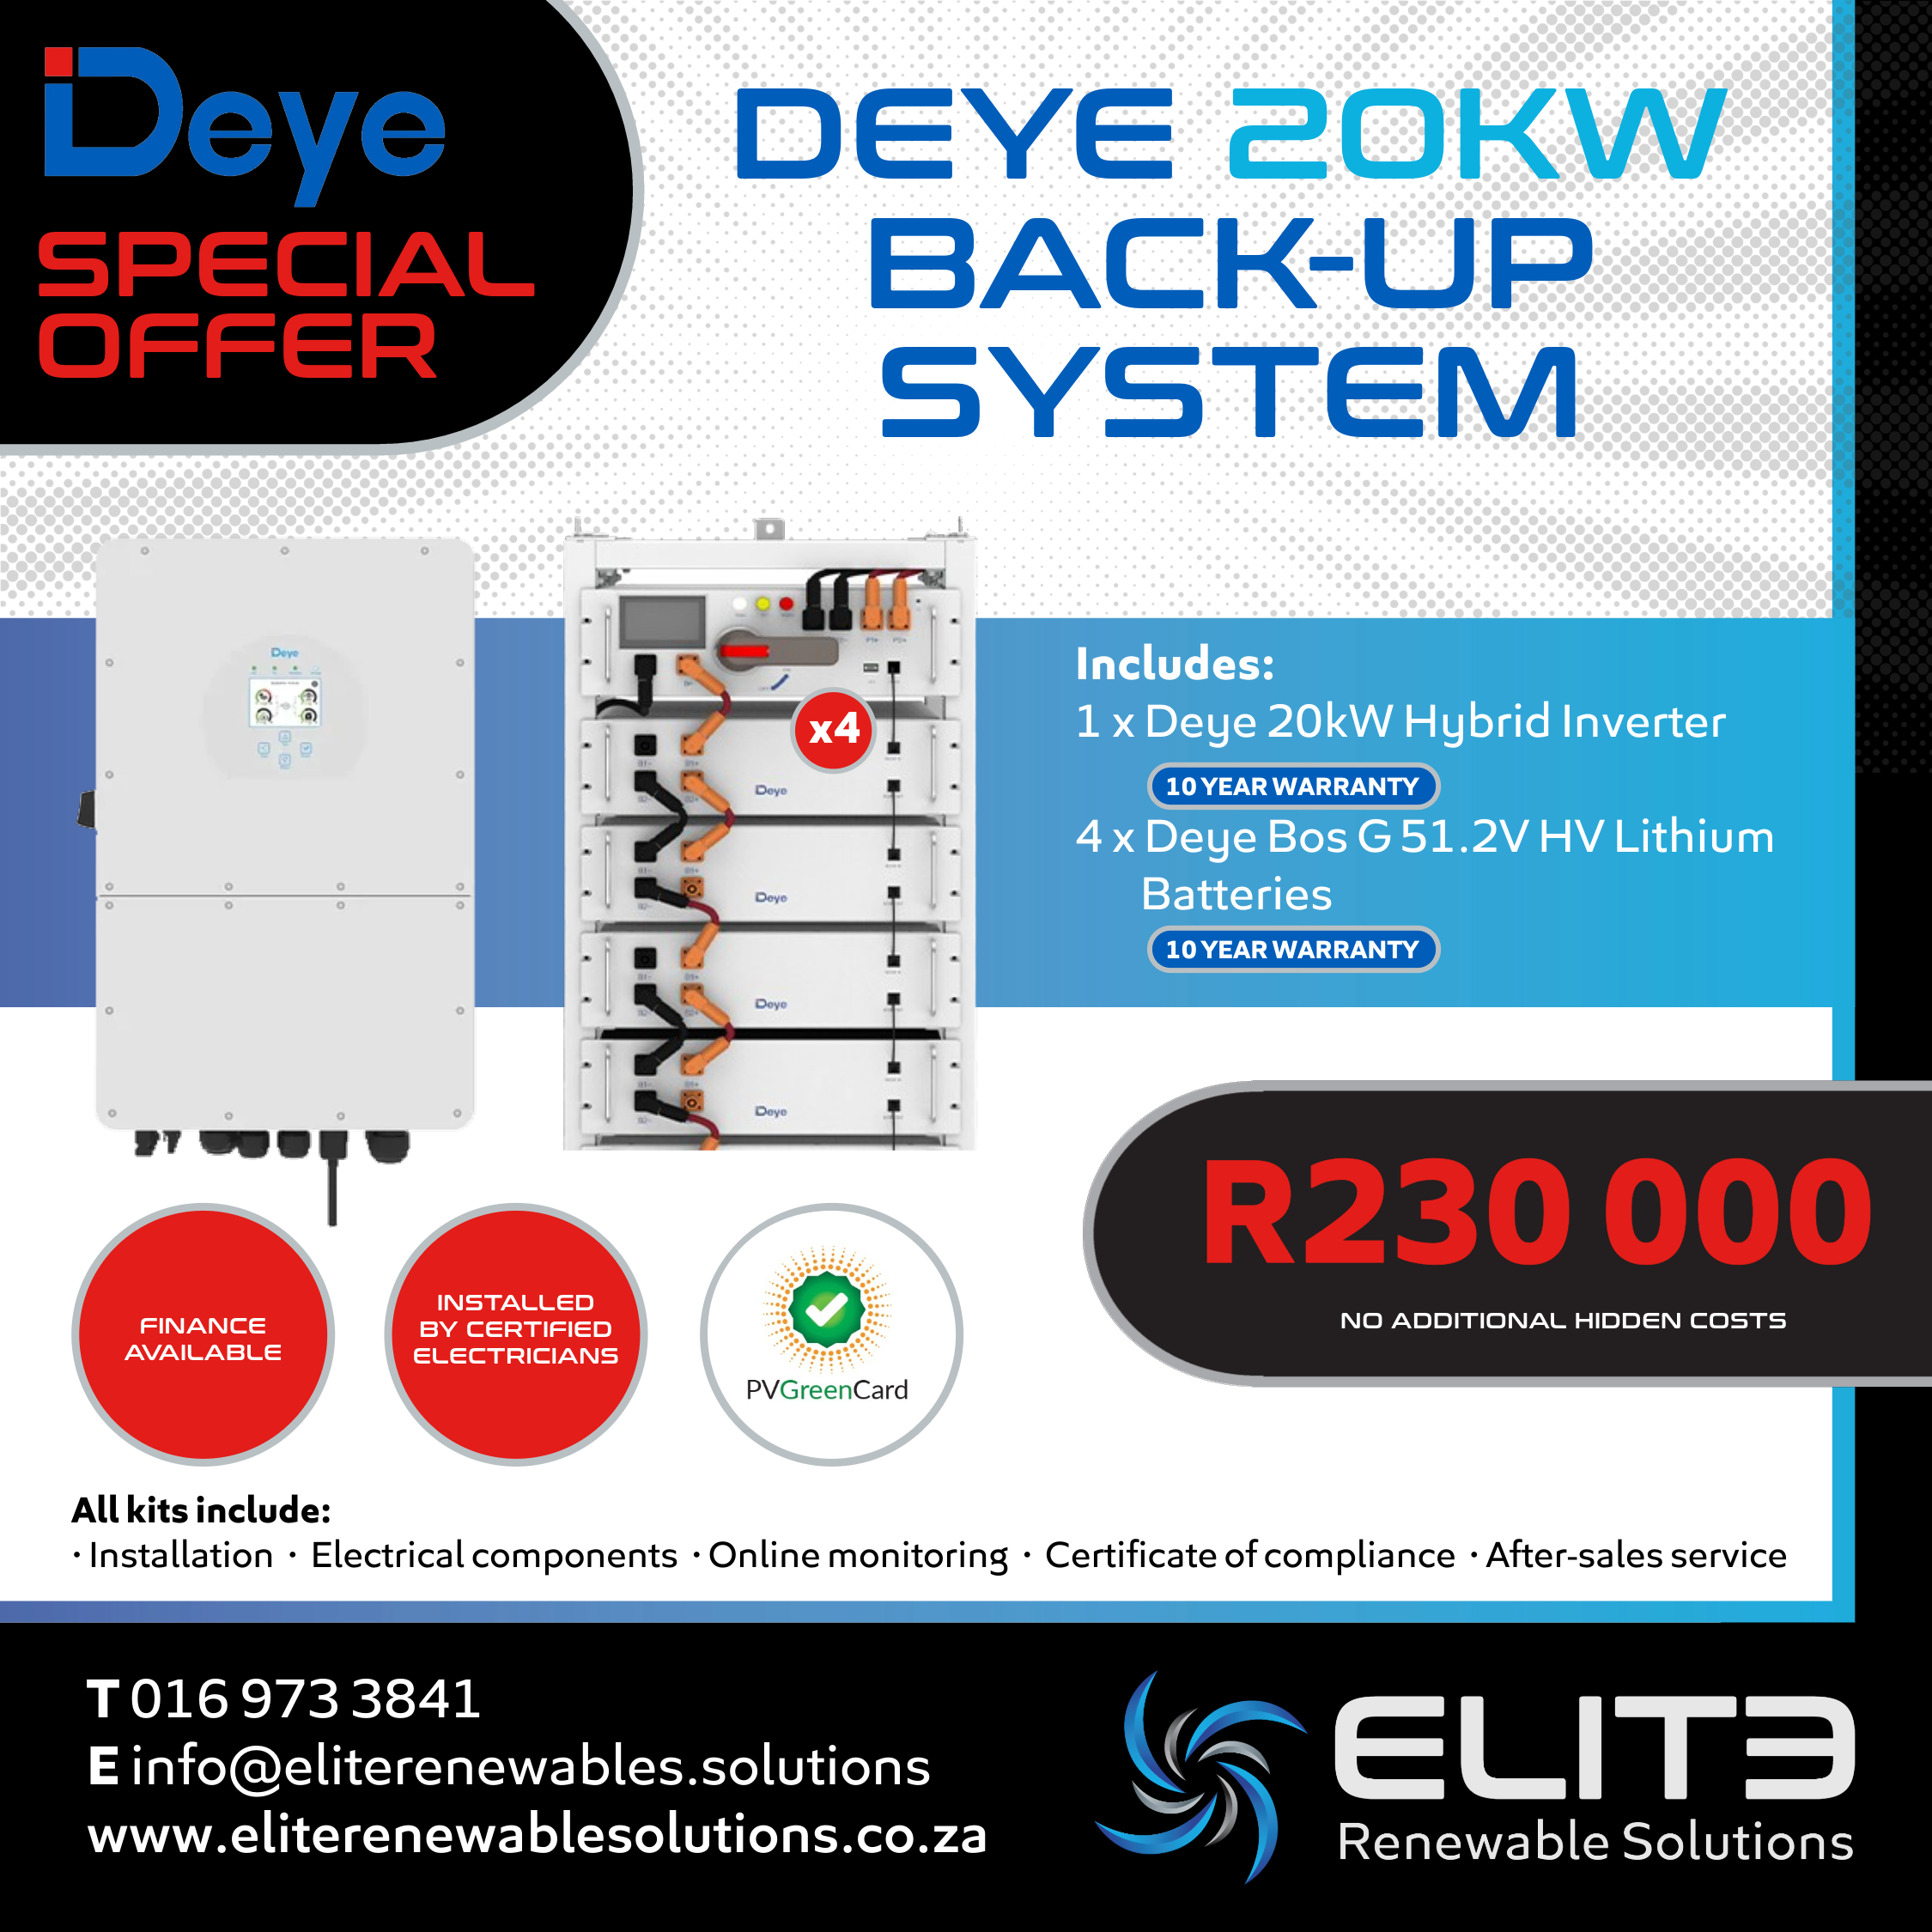 Deye 20Kw Back-Up System - Elite Renewable Solutions